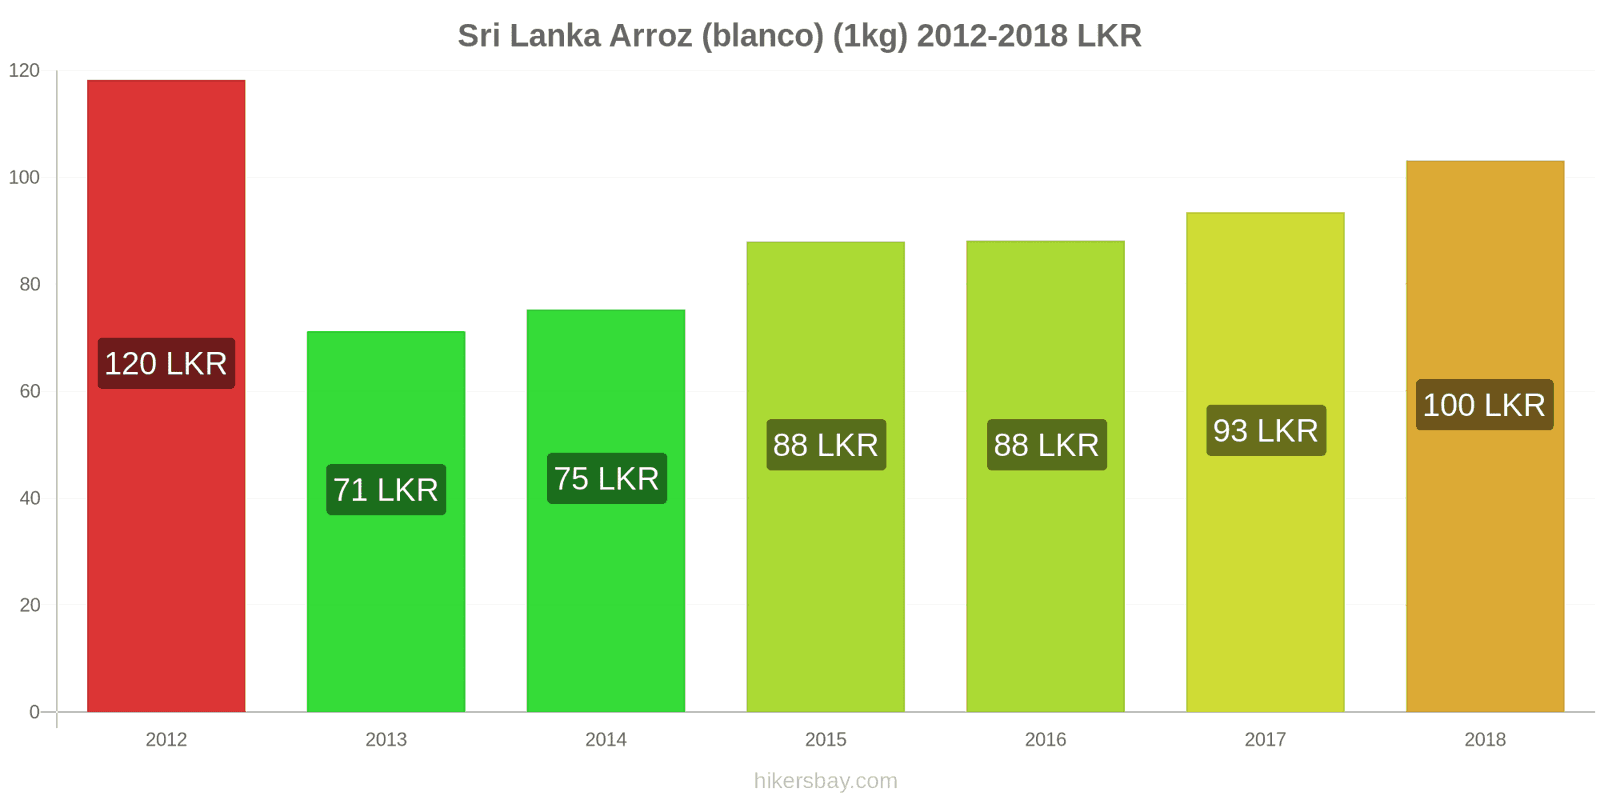 Sri Lanka cambios de precios Kilo de arroz blanco hikersbay.com